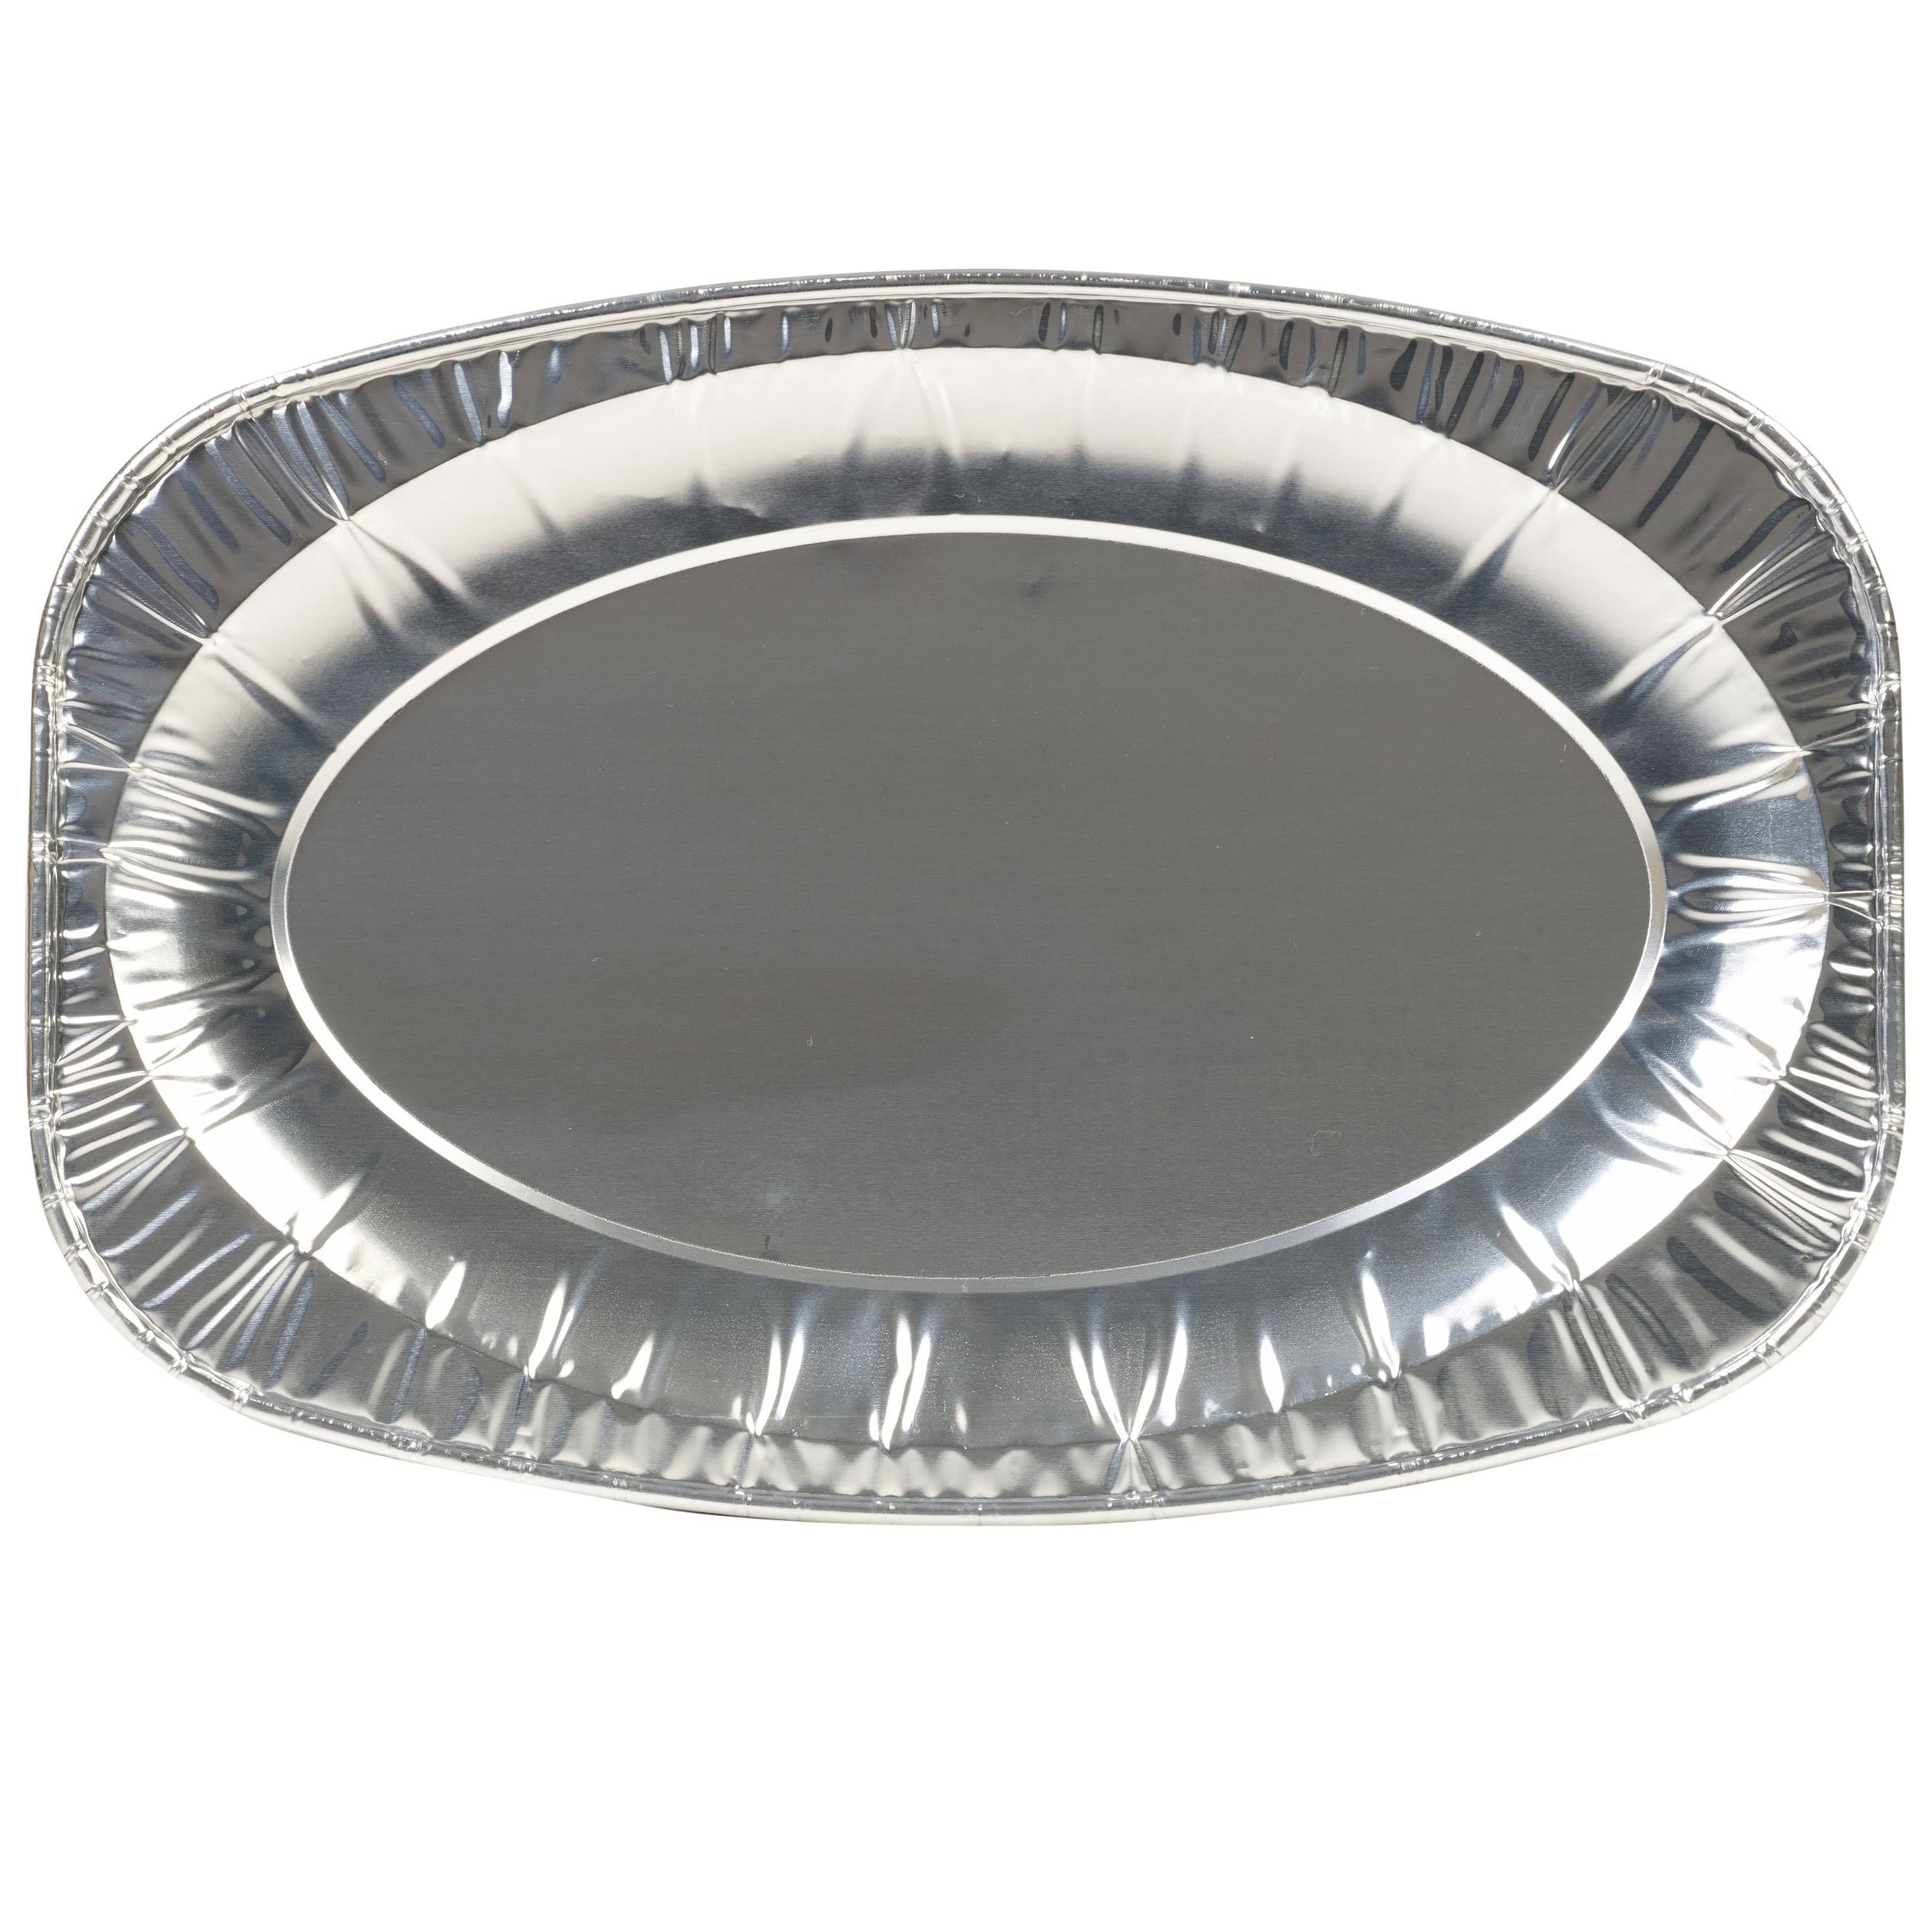 PPS 2 x Aluminium Foil Platter Tray - 36cm x 25cm Disposable Foil Catering Serving Dish